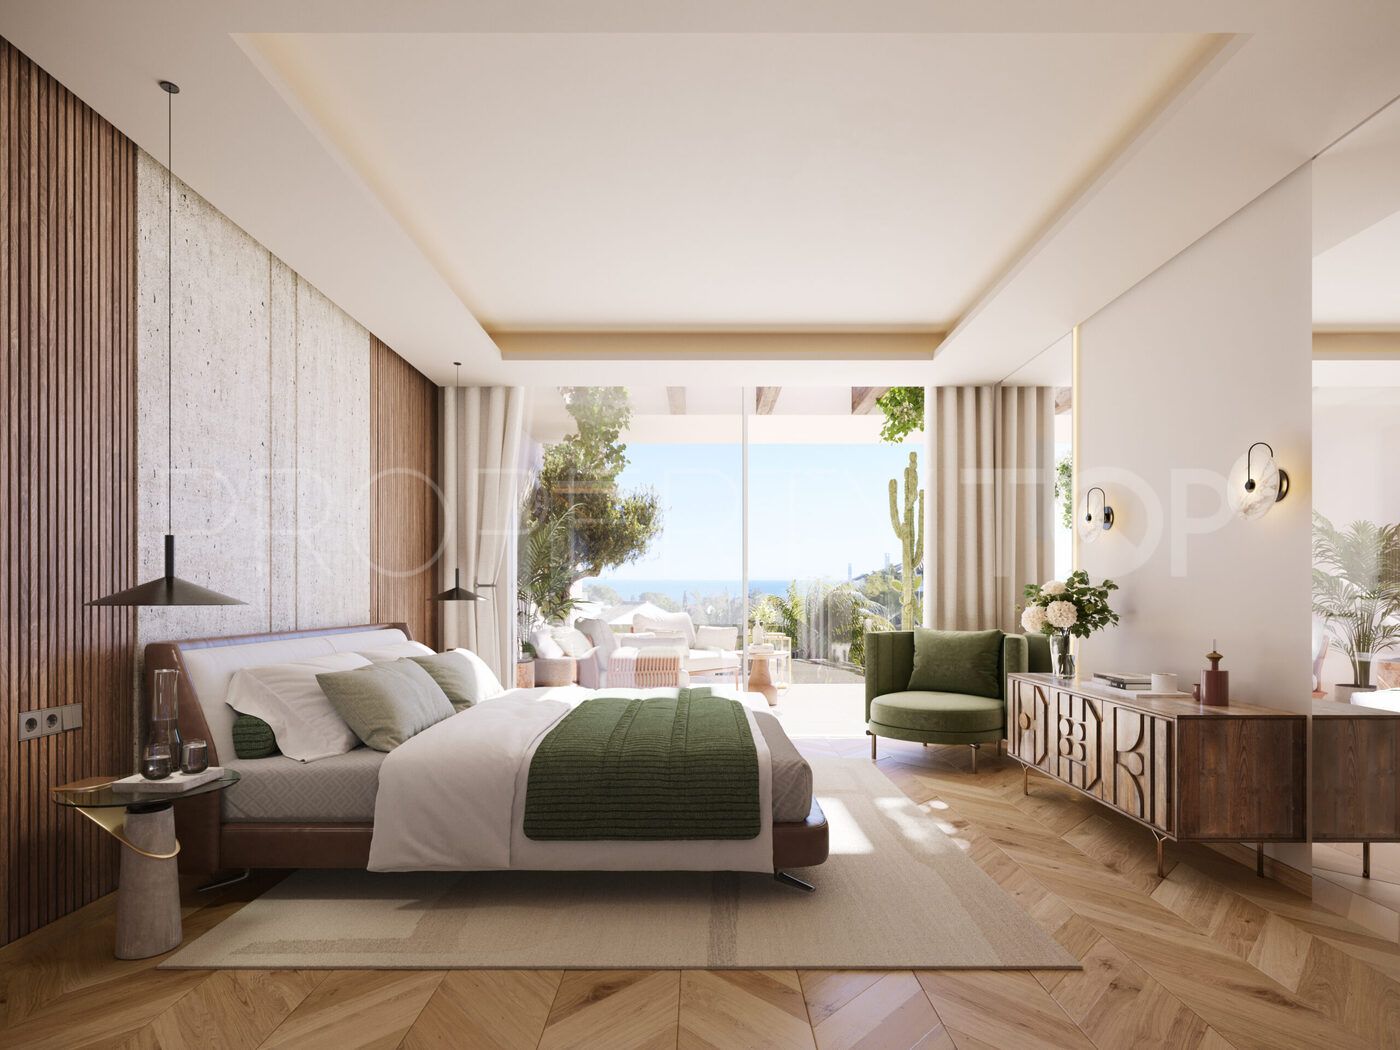 For sale ground floor apartment in Señorio de Marbella